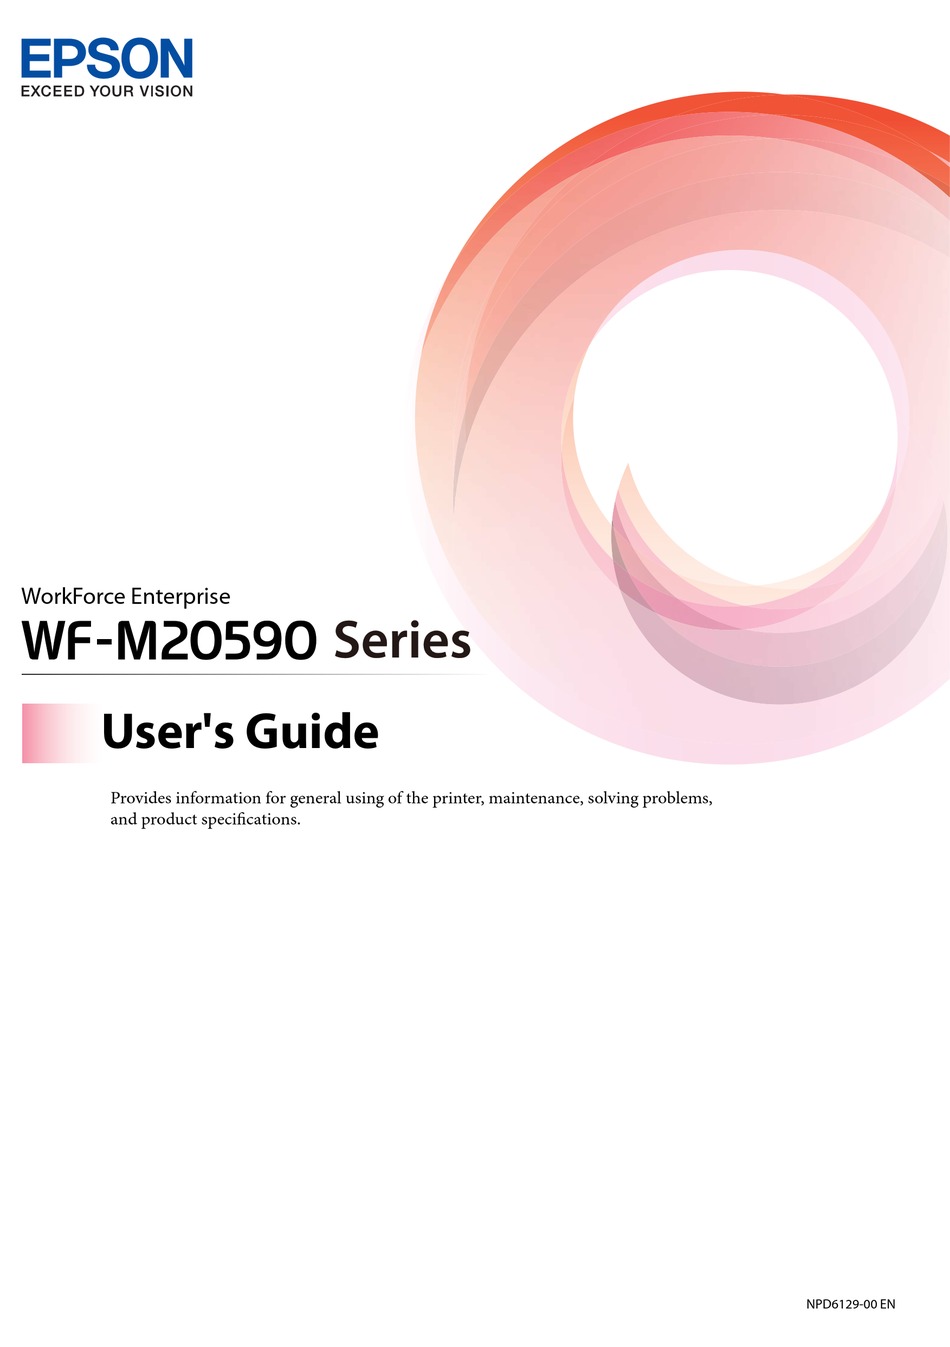 Epson Workforce Enterprise Wf M20590 Series User Manual Pdf Download Manualslib 8891